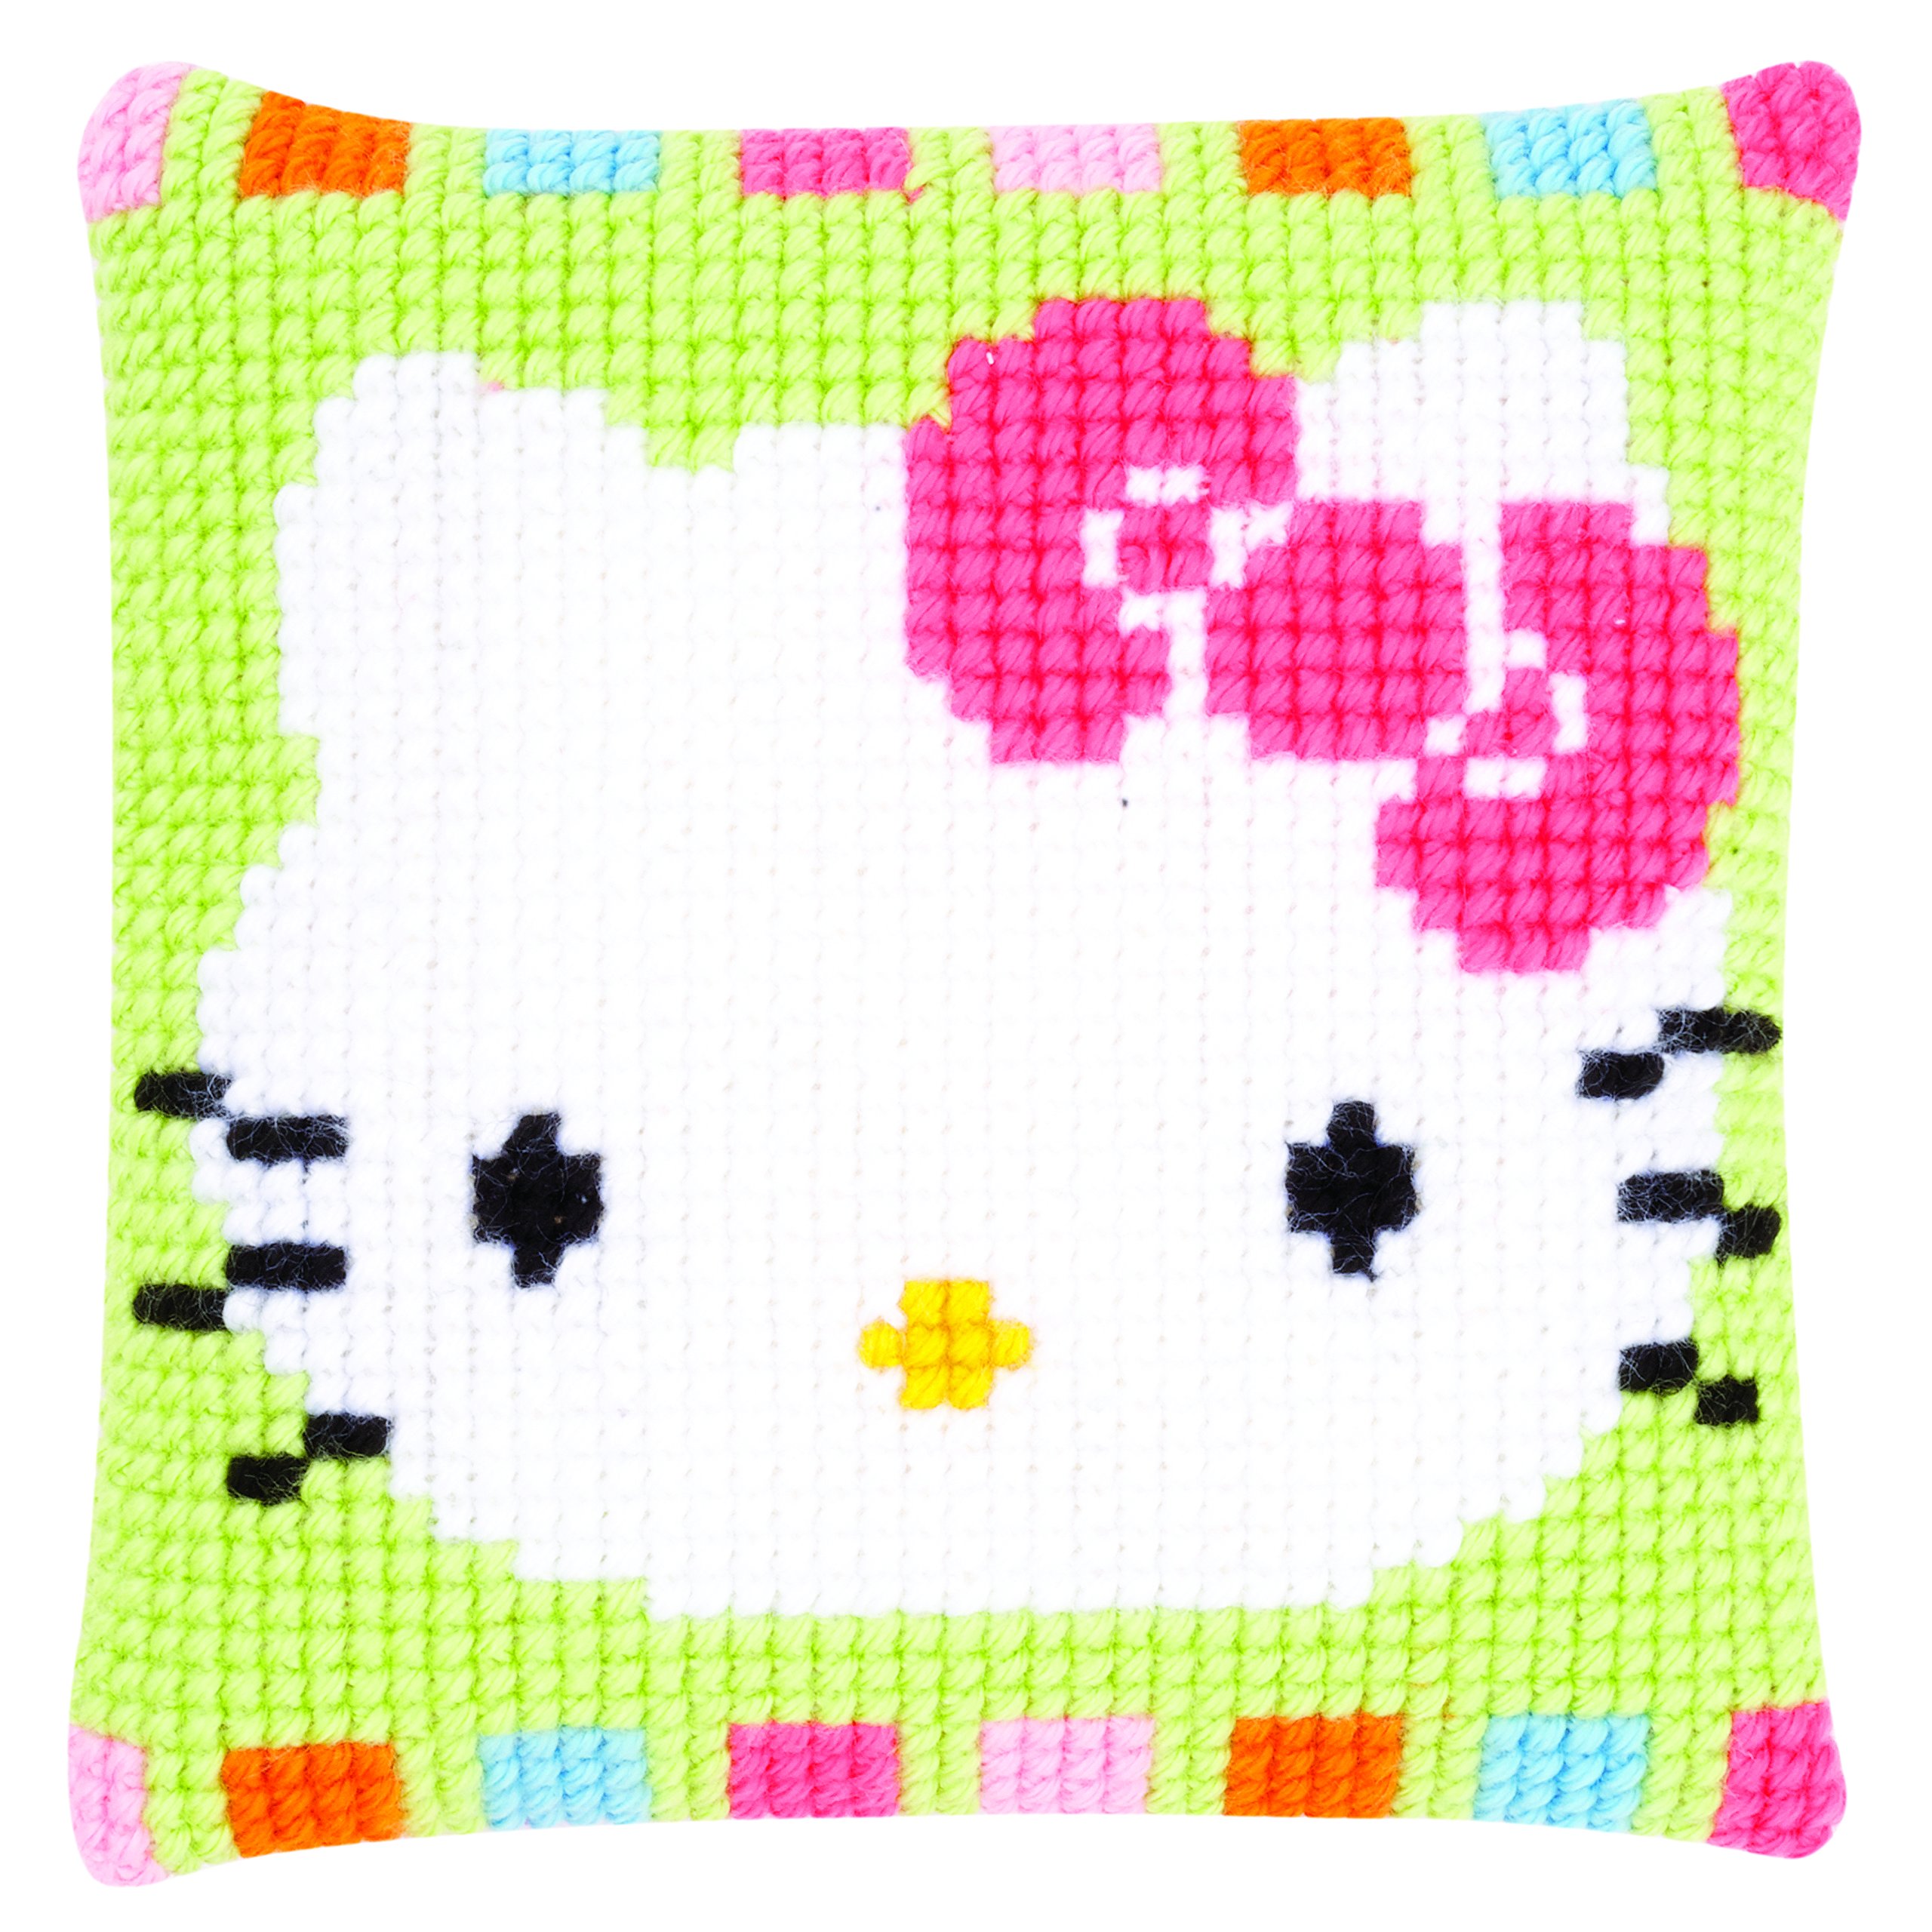 Vervaco Hello Kitty in Pastelltönen Kreuzstichkissen/Stickkissen inklusive Material, Baumwolle, Mehrfarbig, 25 x 25 x 0.3 cm